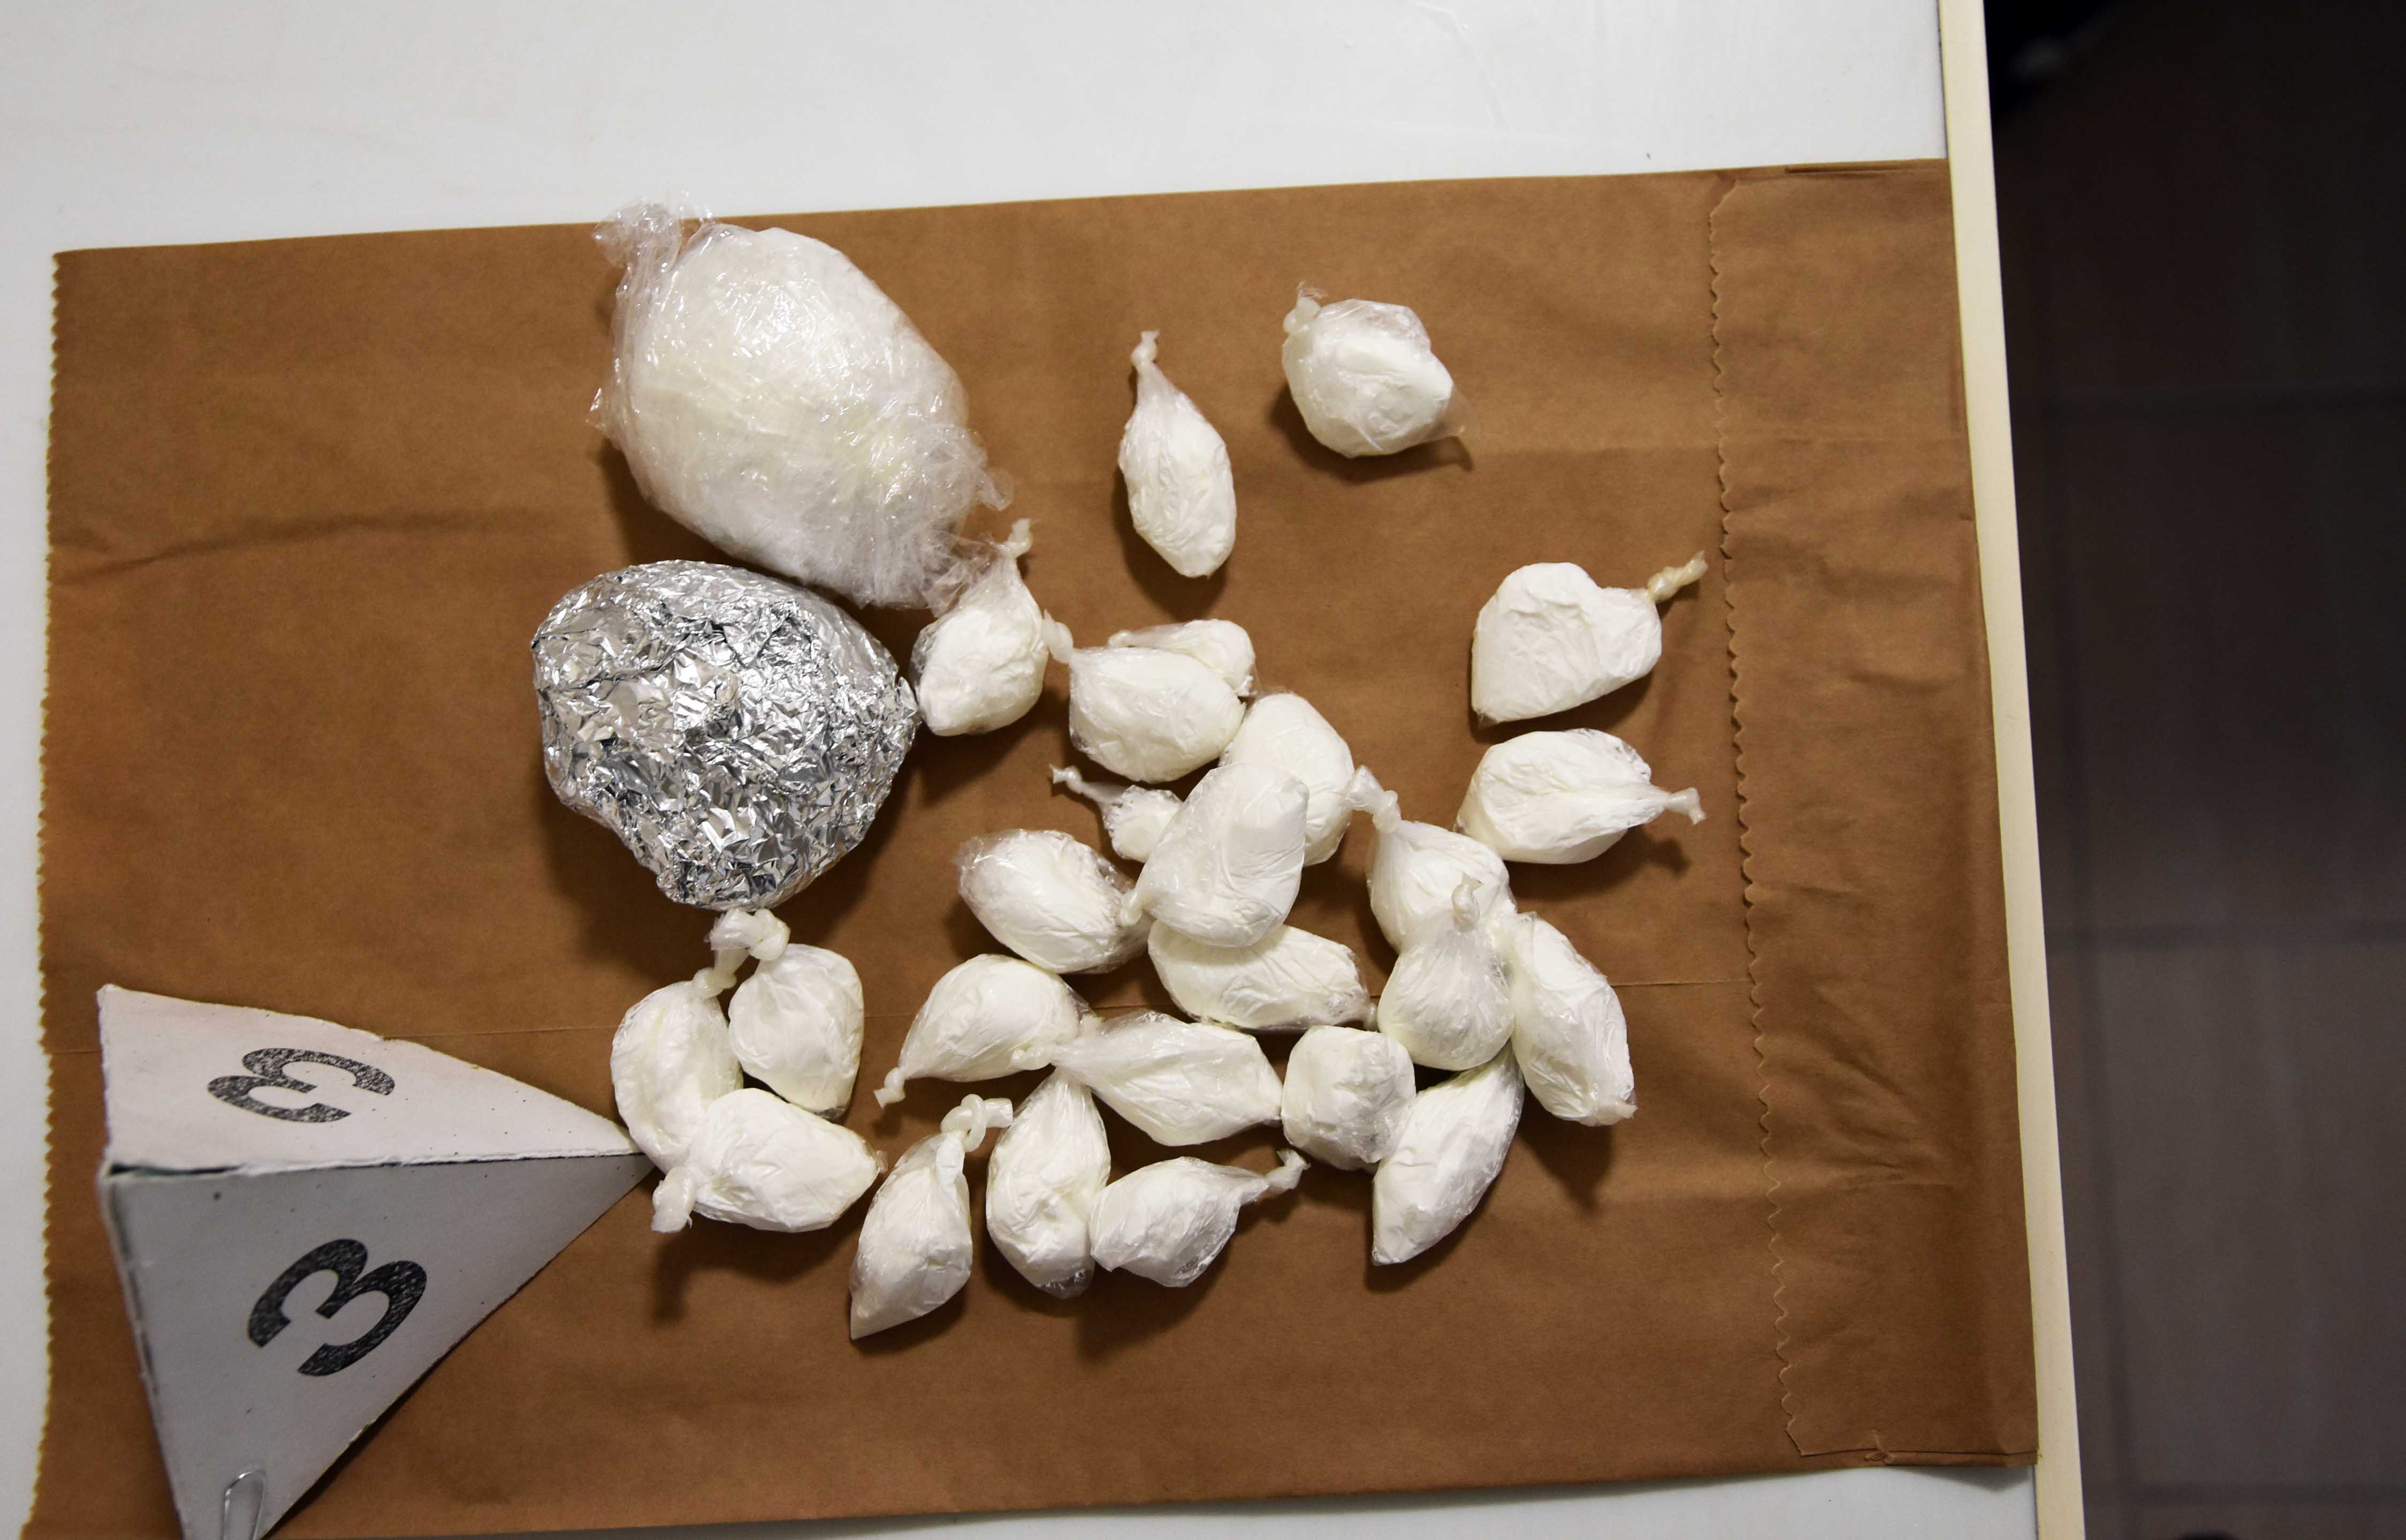 Пронађени амфетамин и хероин, ухапшен осумњичени